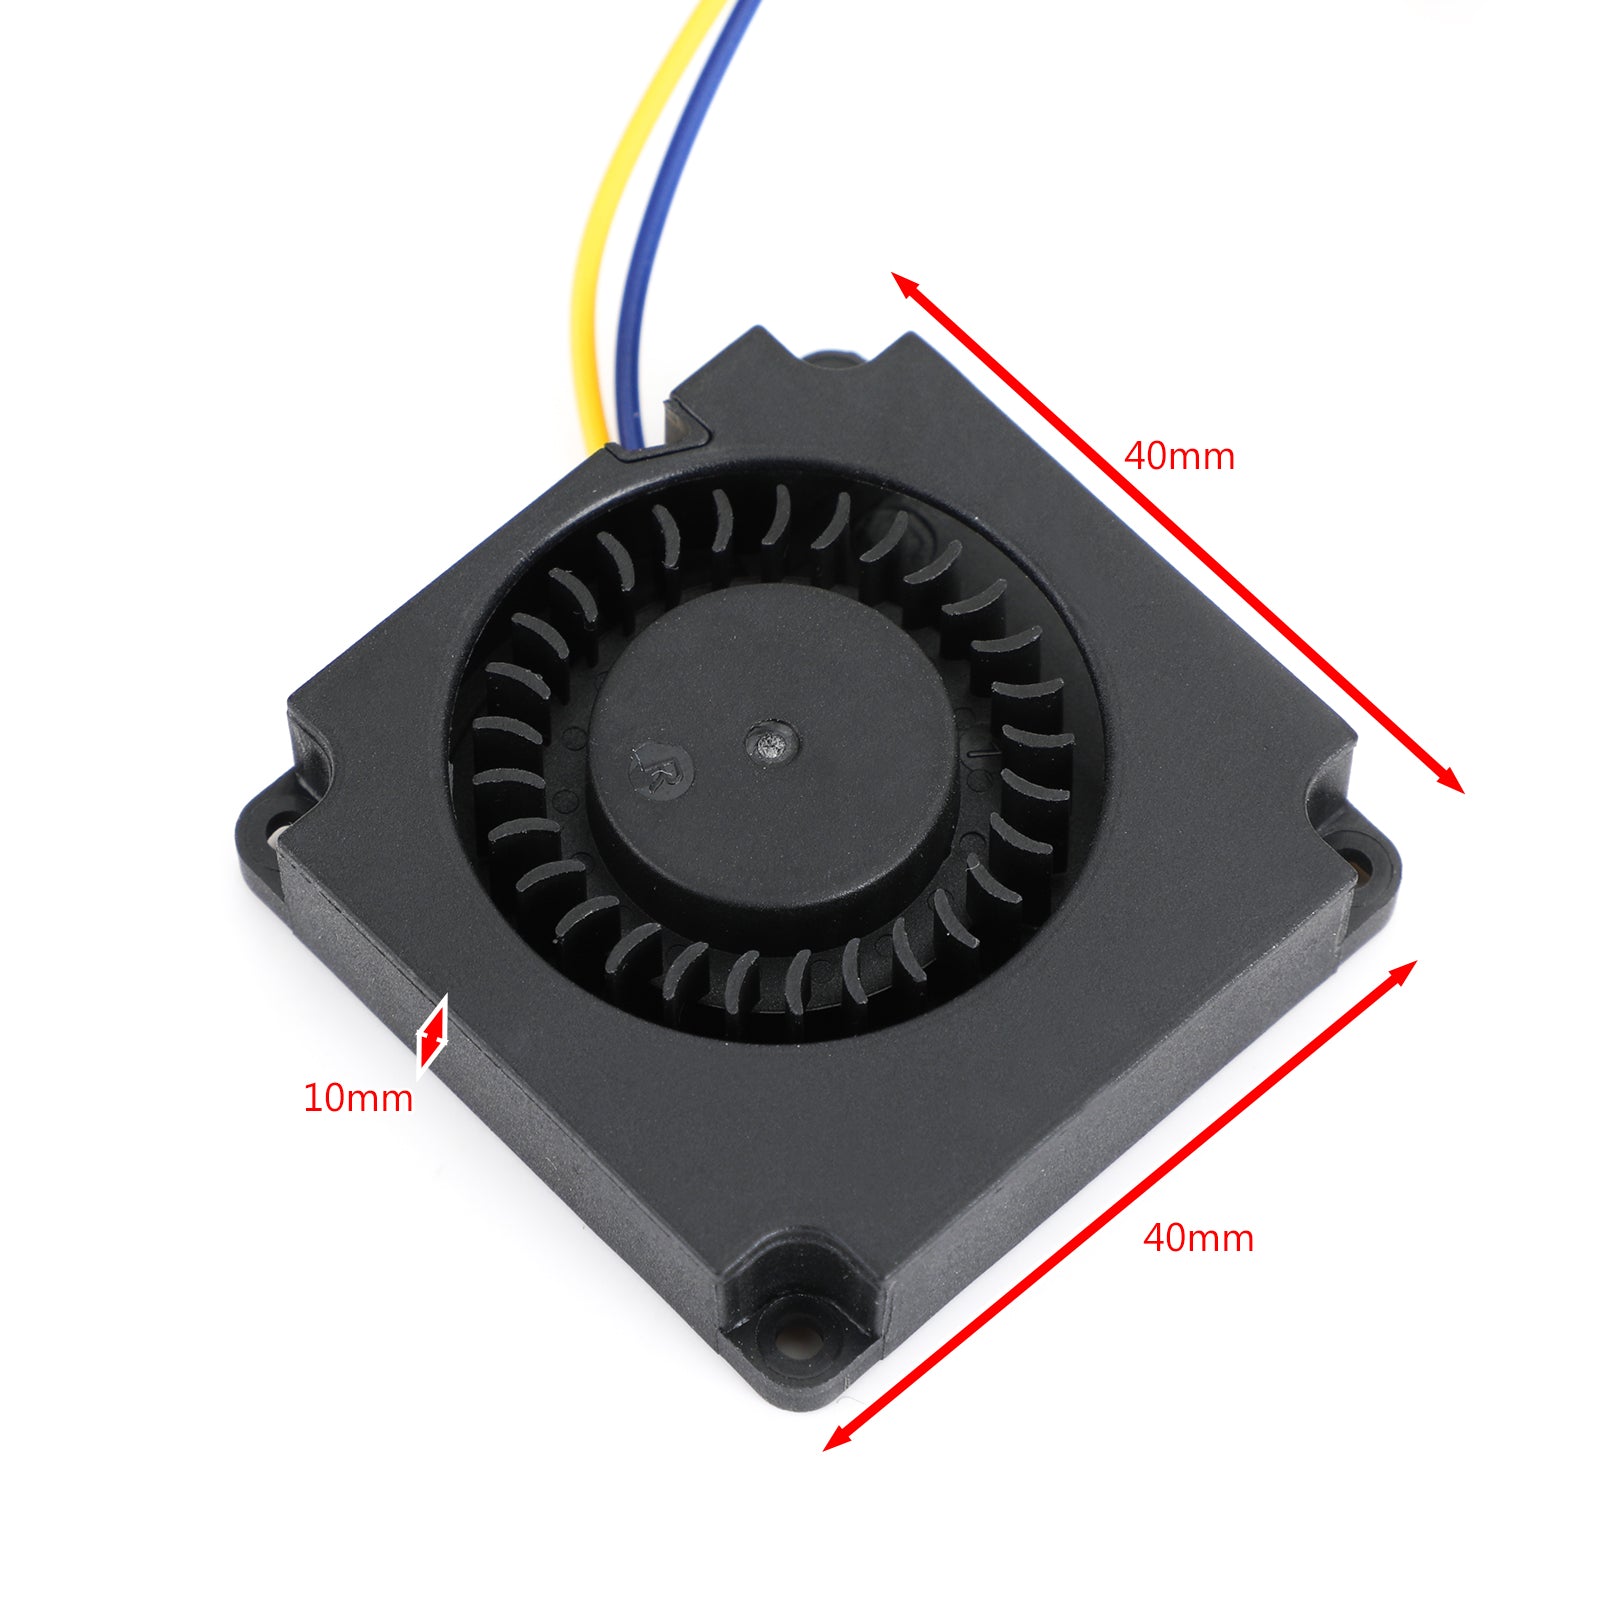 3D Printer Hotend Radial Turbo Blower Fan 24V Accessory For ENDER 3 CR-10S PRO